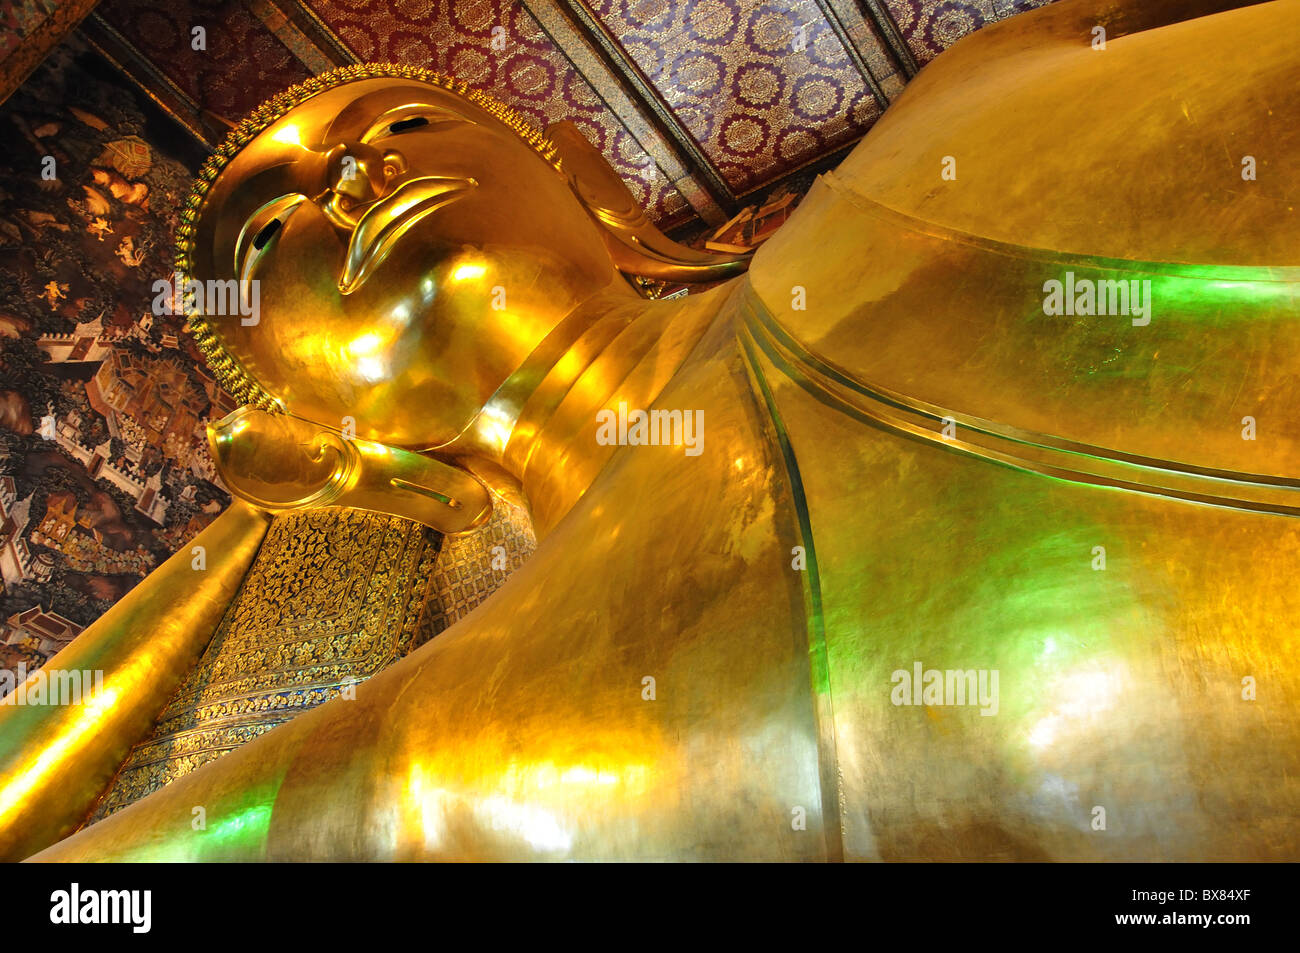 Le Bouddha couché, Wat Pho, Temple de l'île Rattanakosin, Bangkok, Thaïlande Banque D'Images